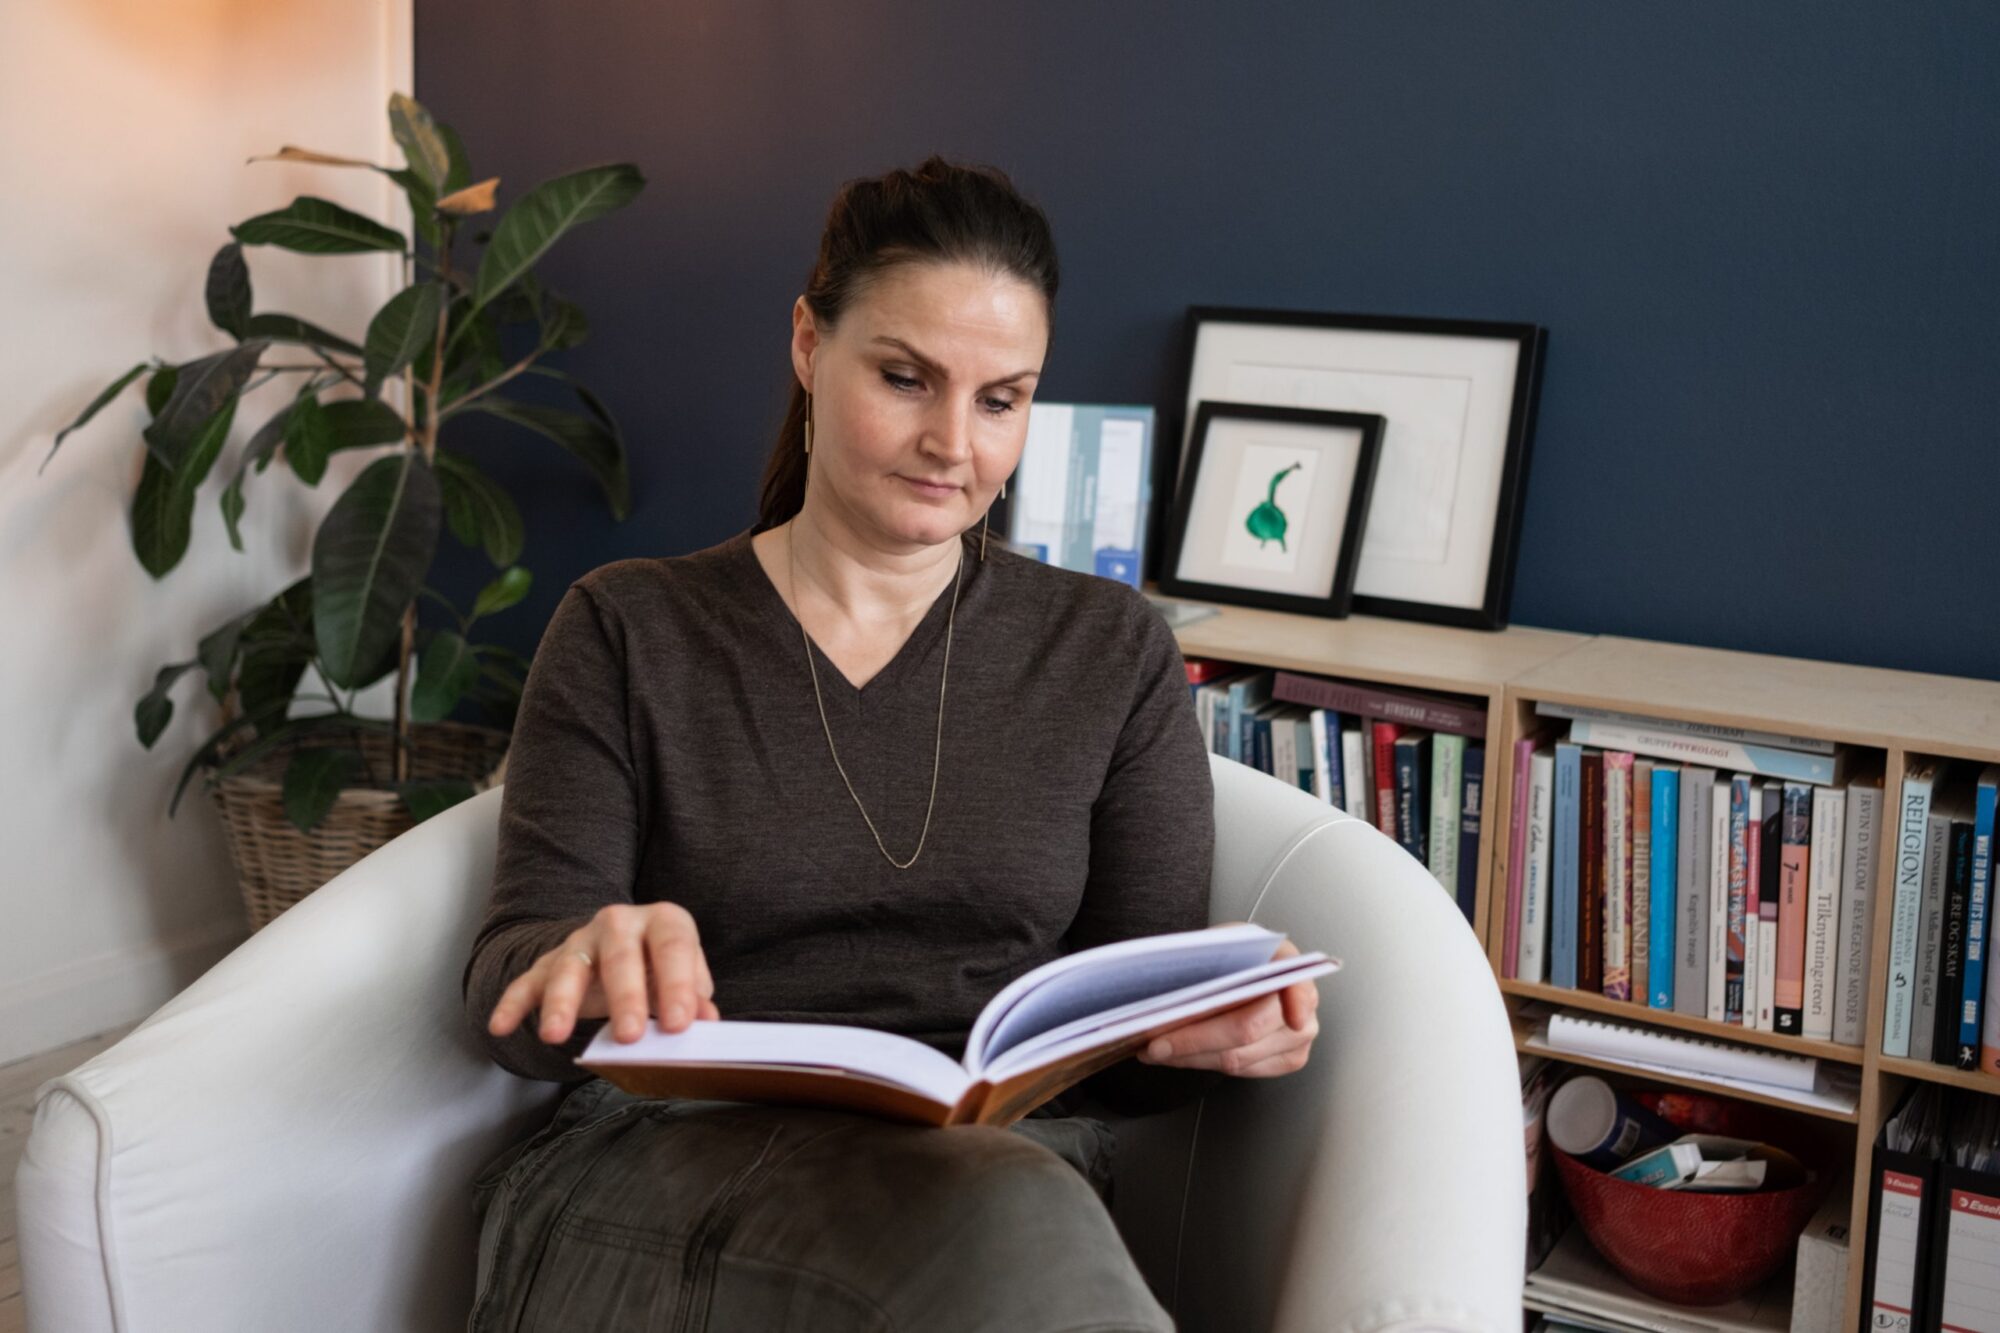 Lise Kramer Schmidth leser en bok i en stol